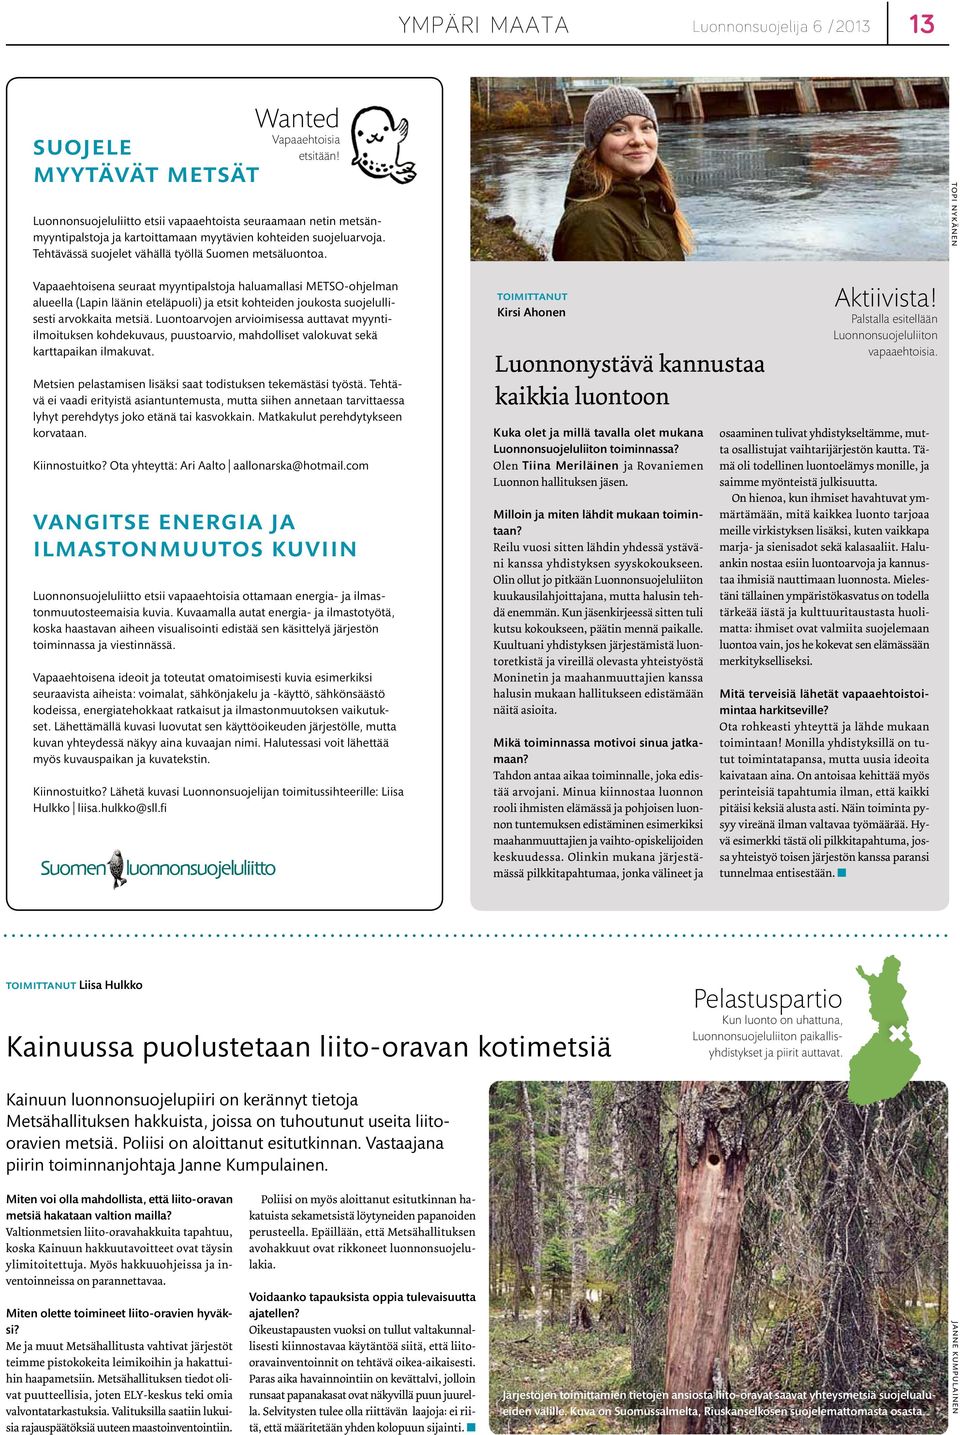 topi nykänen Vapaaehtoisena seuraat myyntipalstoja haluamallasi METSO-ohjelman alueella (Lapin läänin eteläpuoli) ja etsit kohteiden joukosta suojelullisesti arvokkaita metsiä.